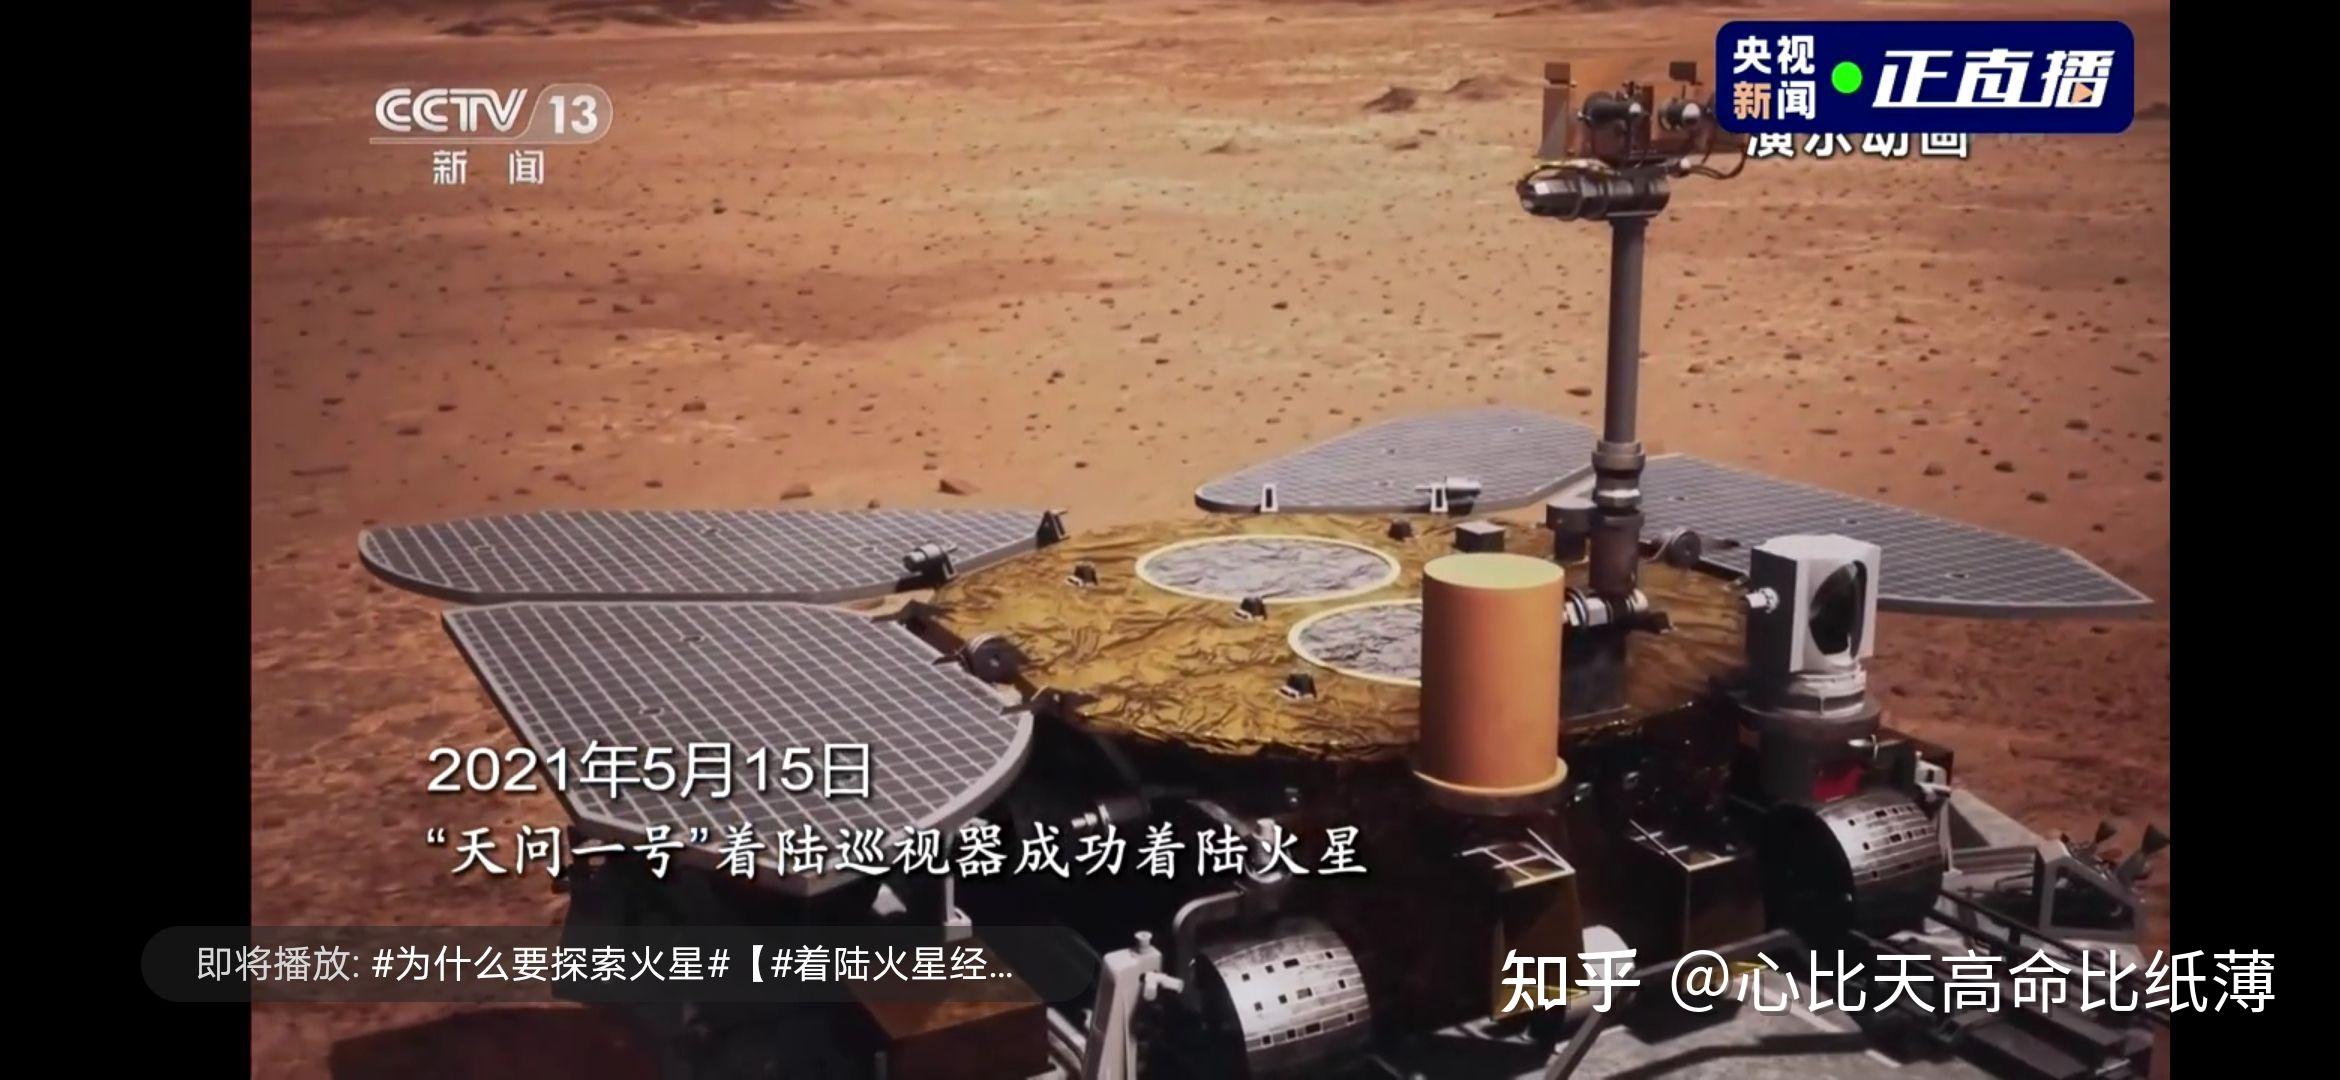 天问一号携祝融号火星车成功着陆火星首次留下中国印迹背后有哪些重大